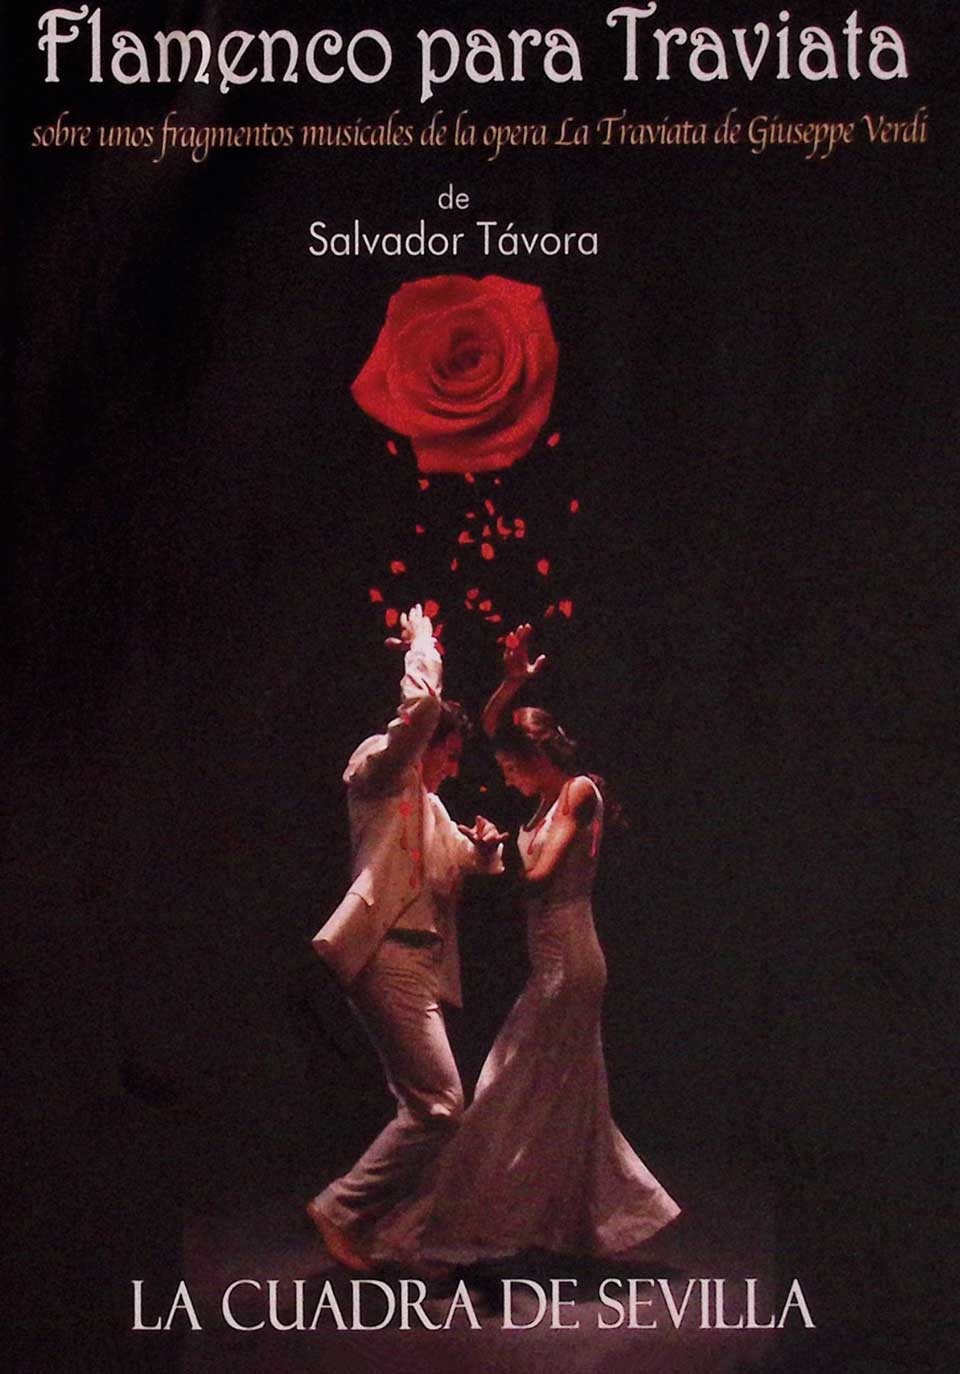 Flamenco para Traviata sobre unos fragmentos musicales de la ópera La Traviata de Giuseppe Verdi. La Cuadra de Sevilla